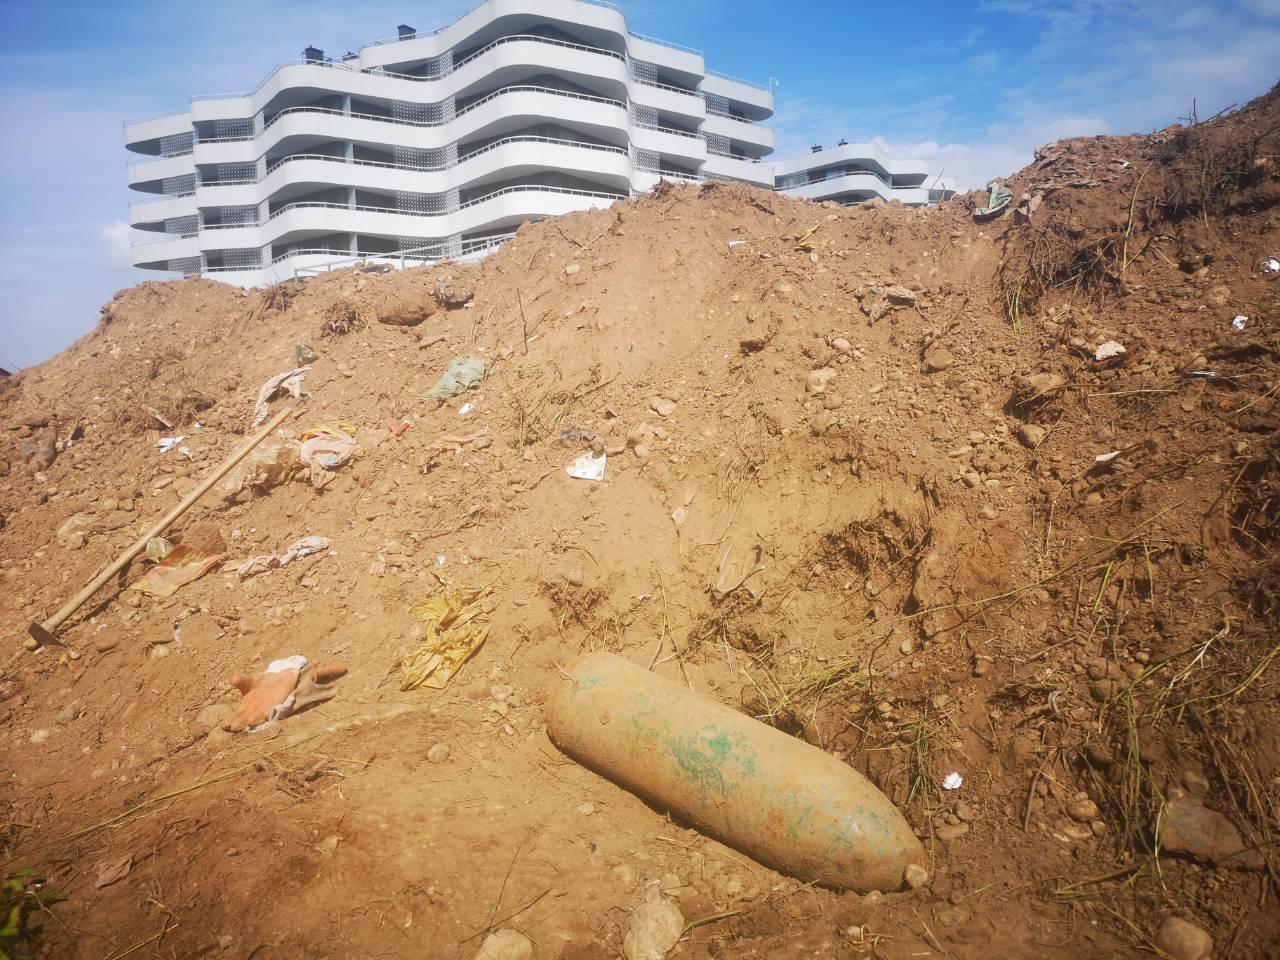 Aviobomba teška 50 kilograma pronađena na gradilištu u Otesu